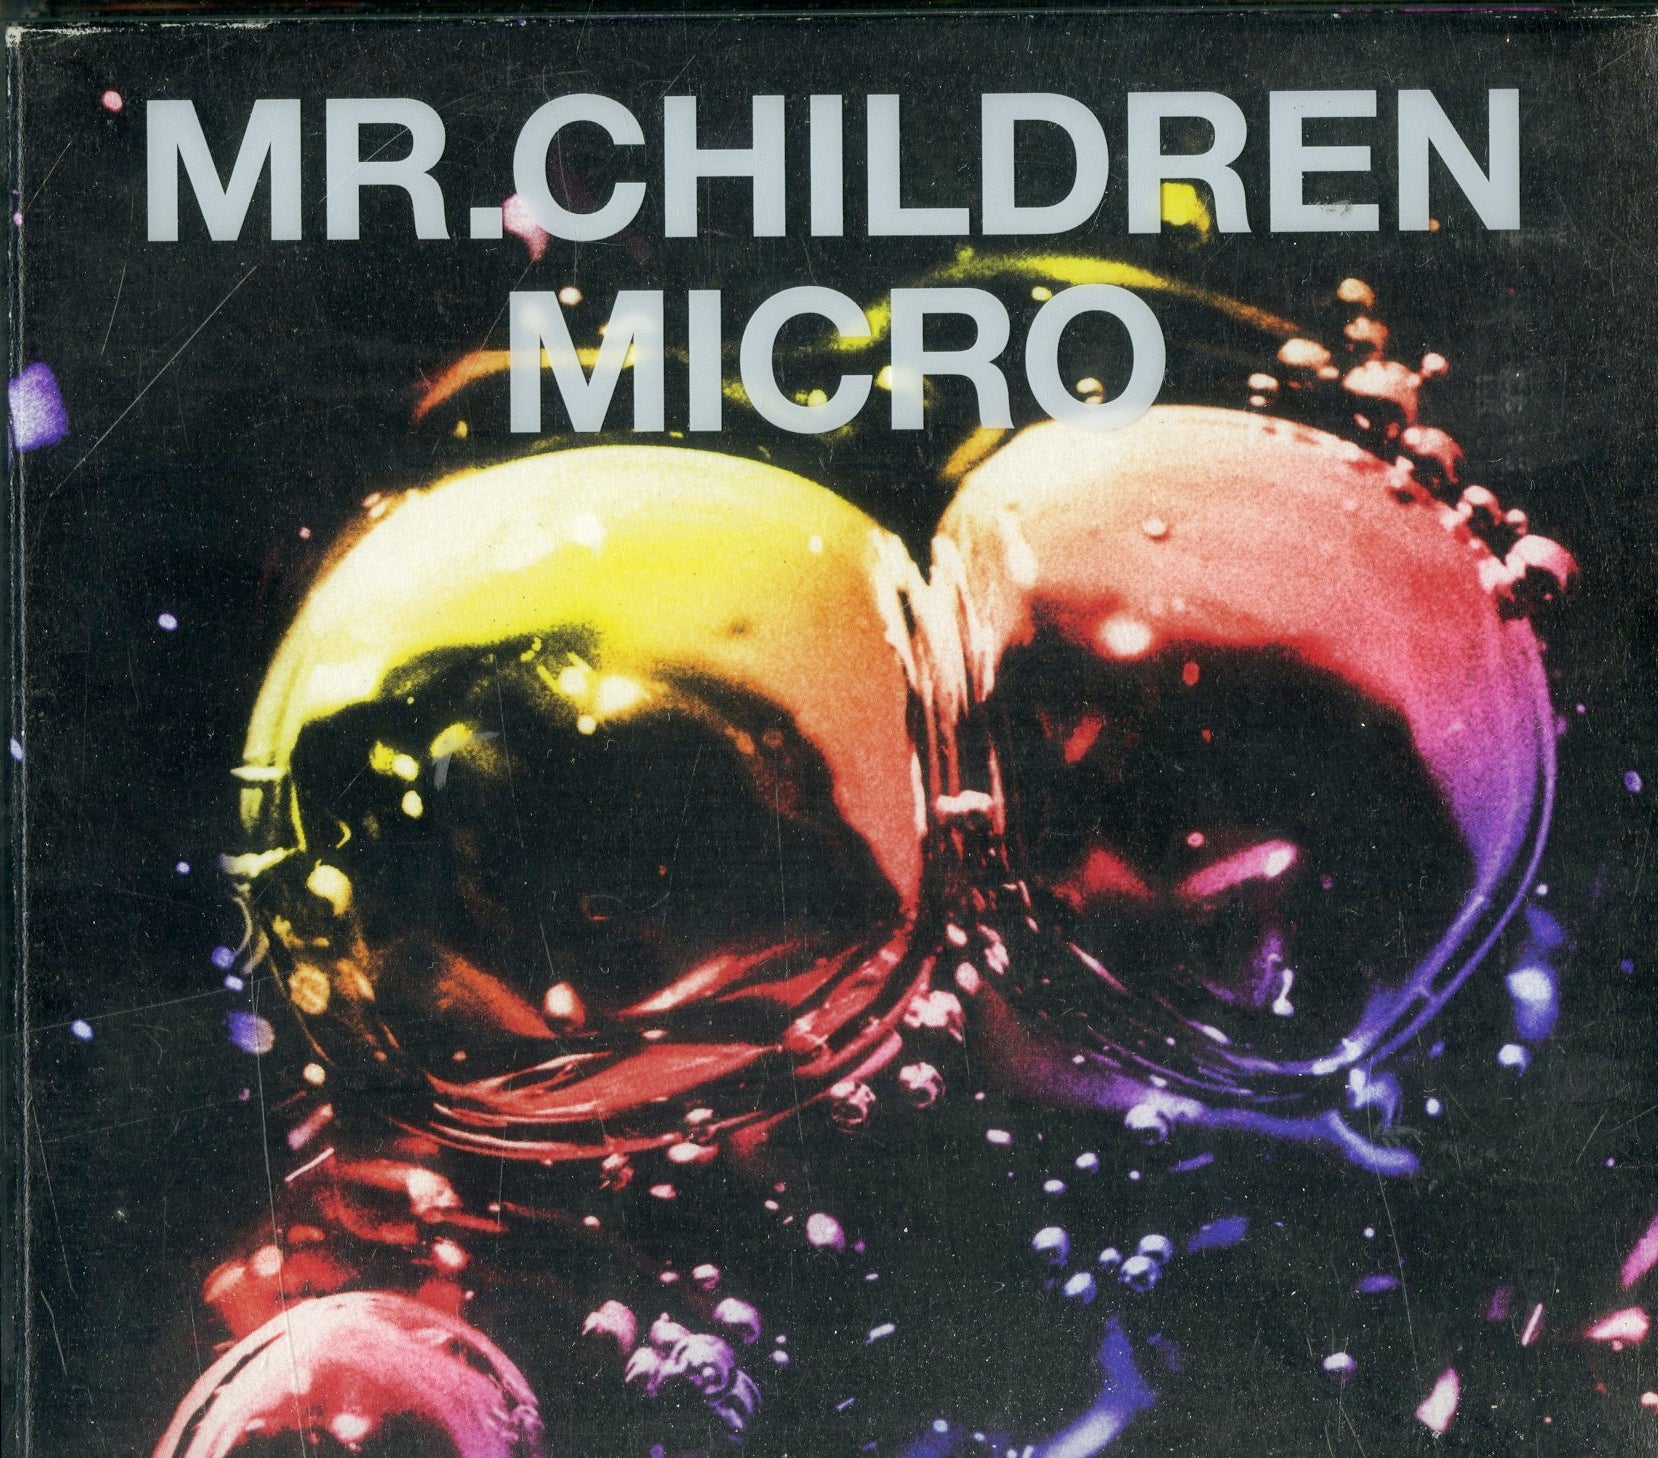 MR.CHILDREN MICRO